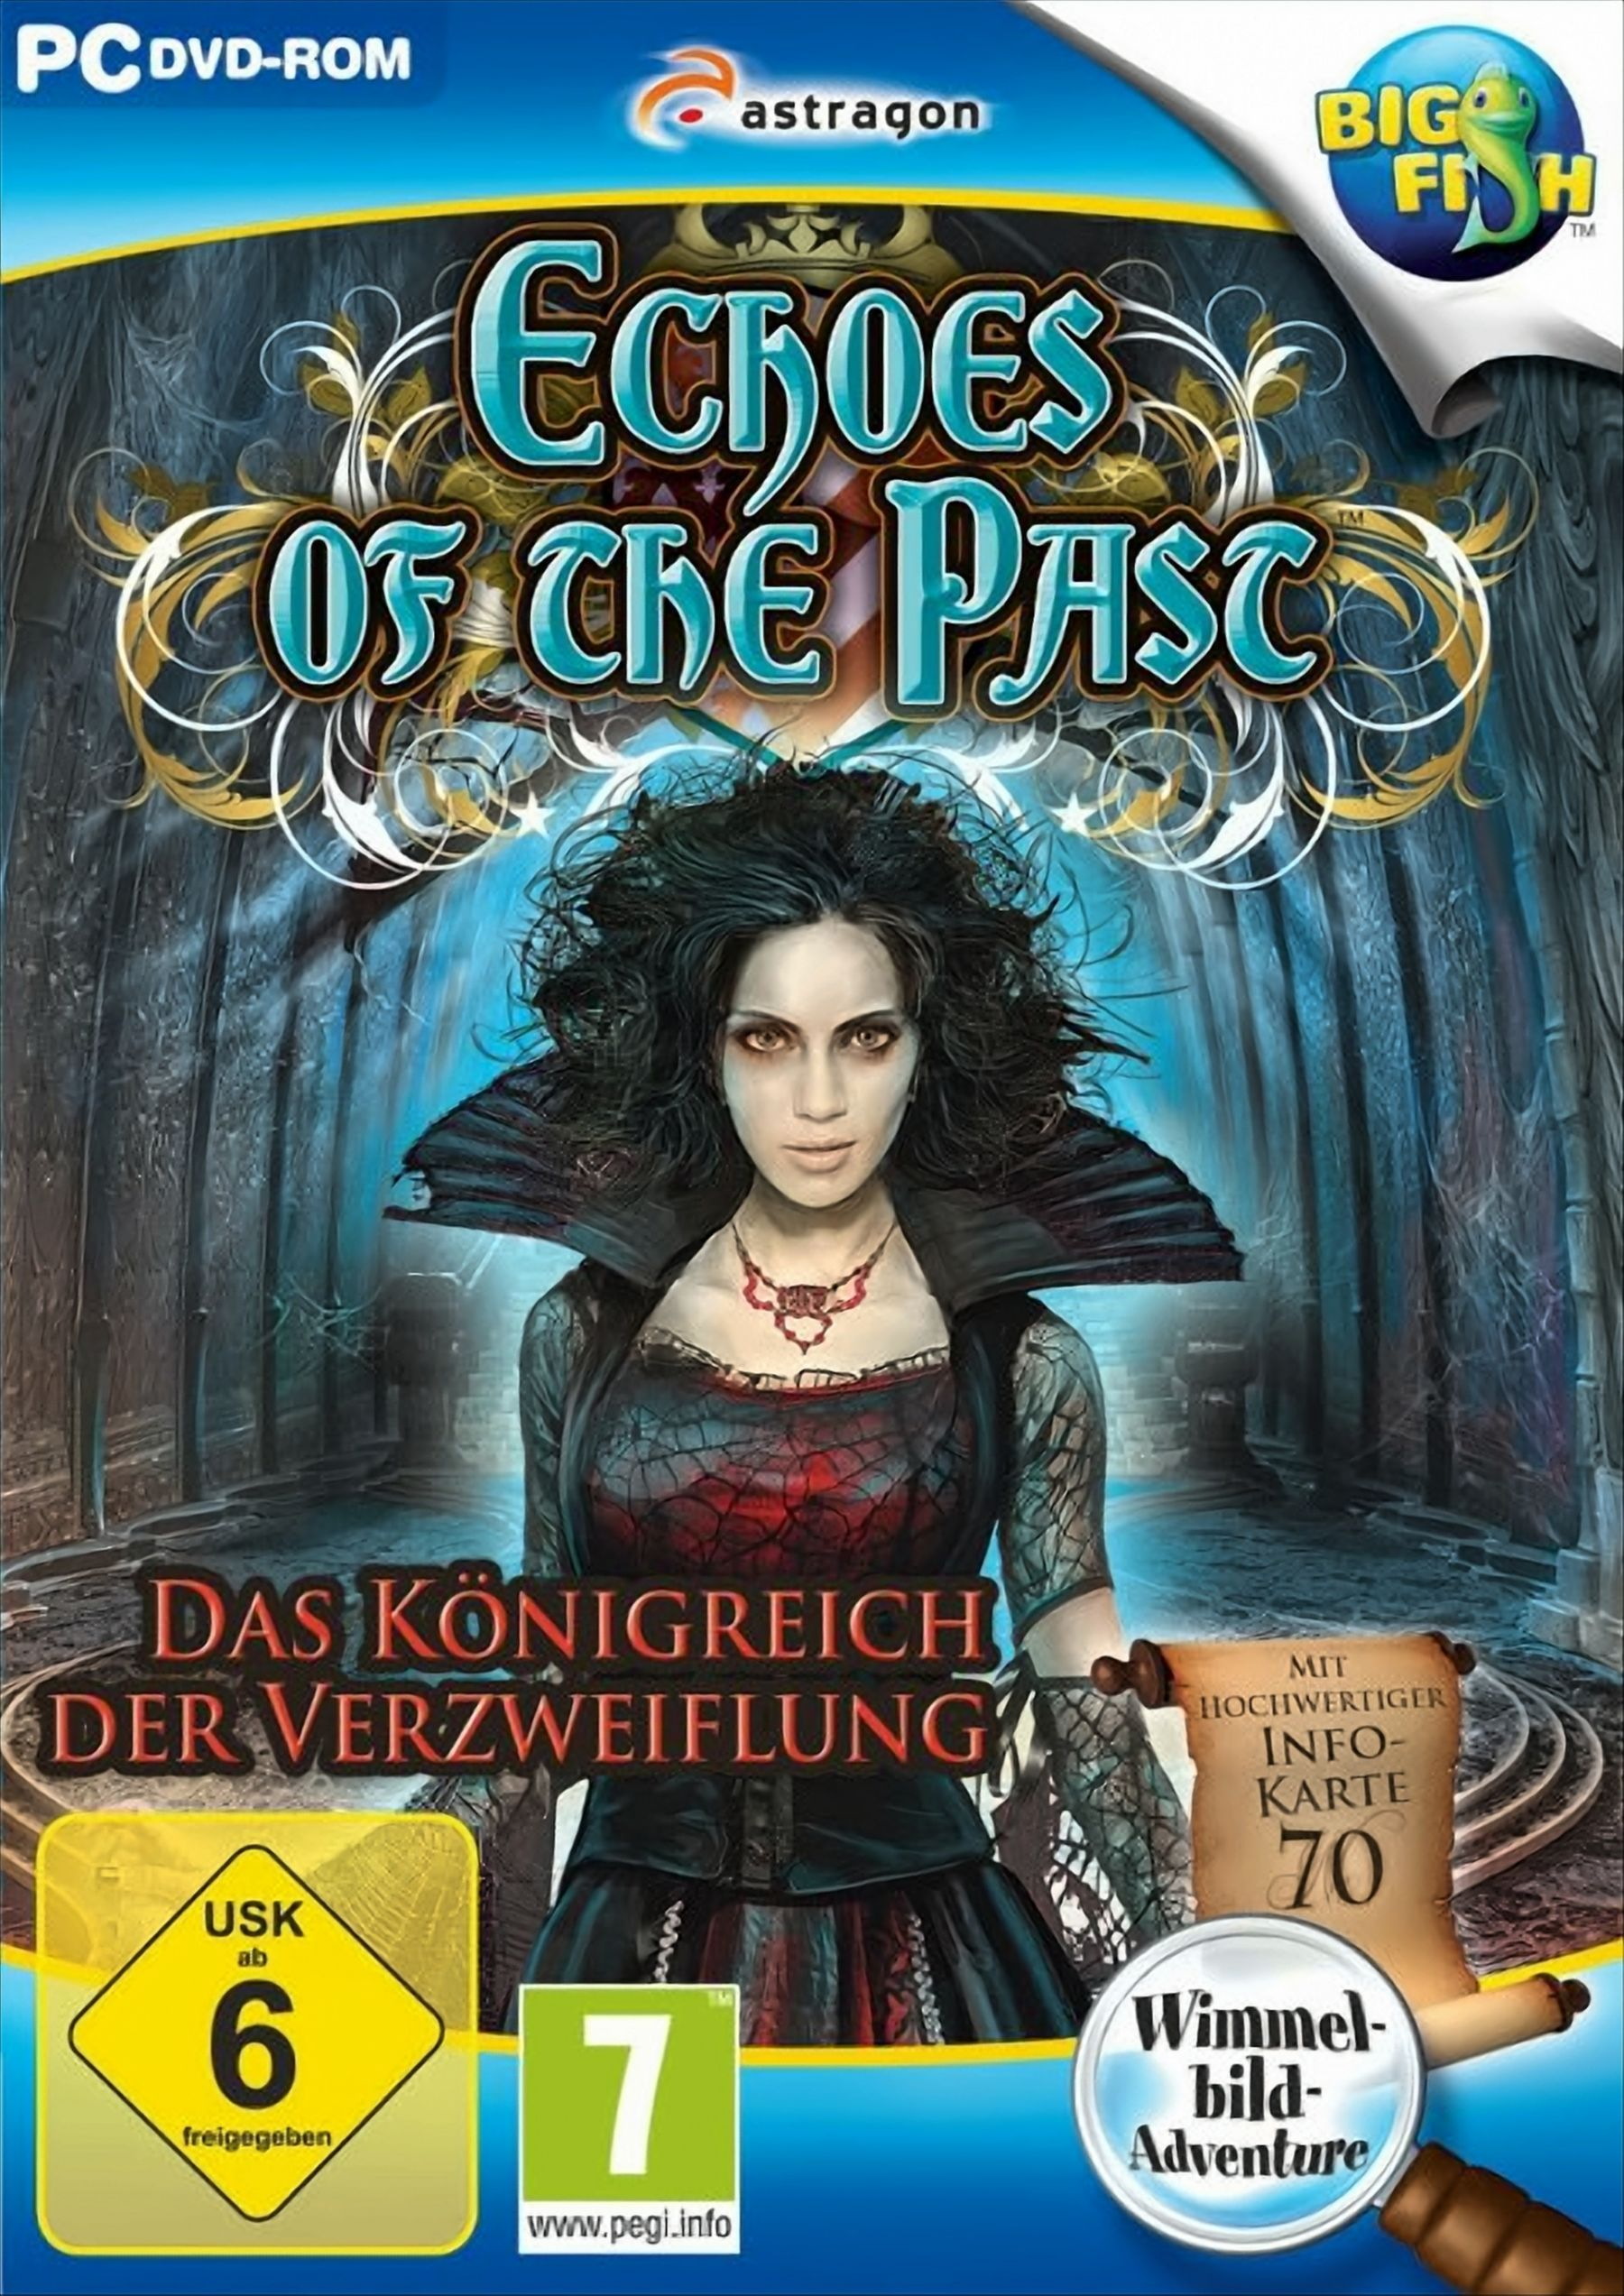 Echoes Of The Past: [PC] Königreich Verzweiflung - der Das